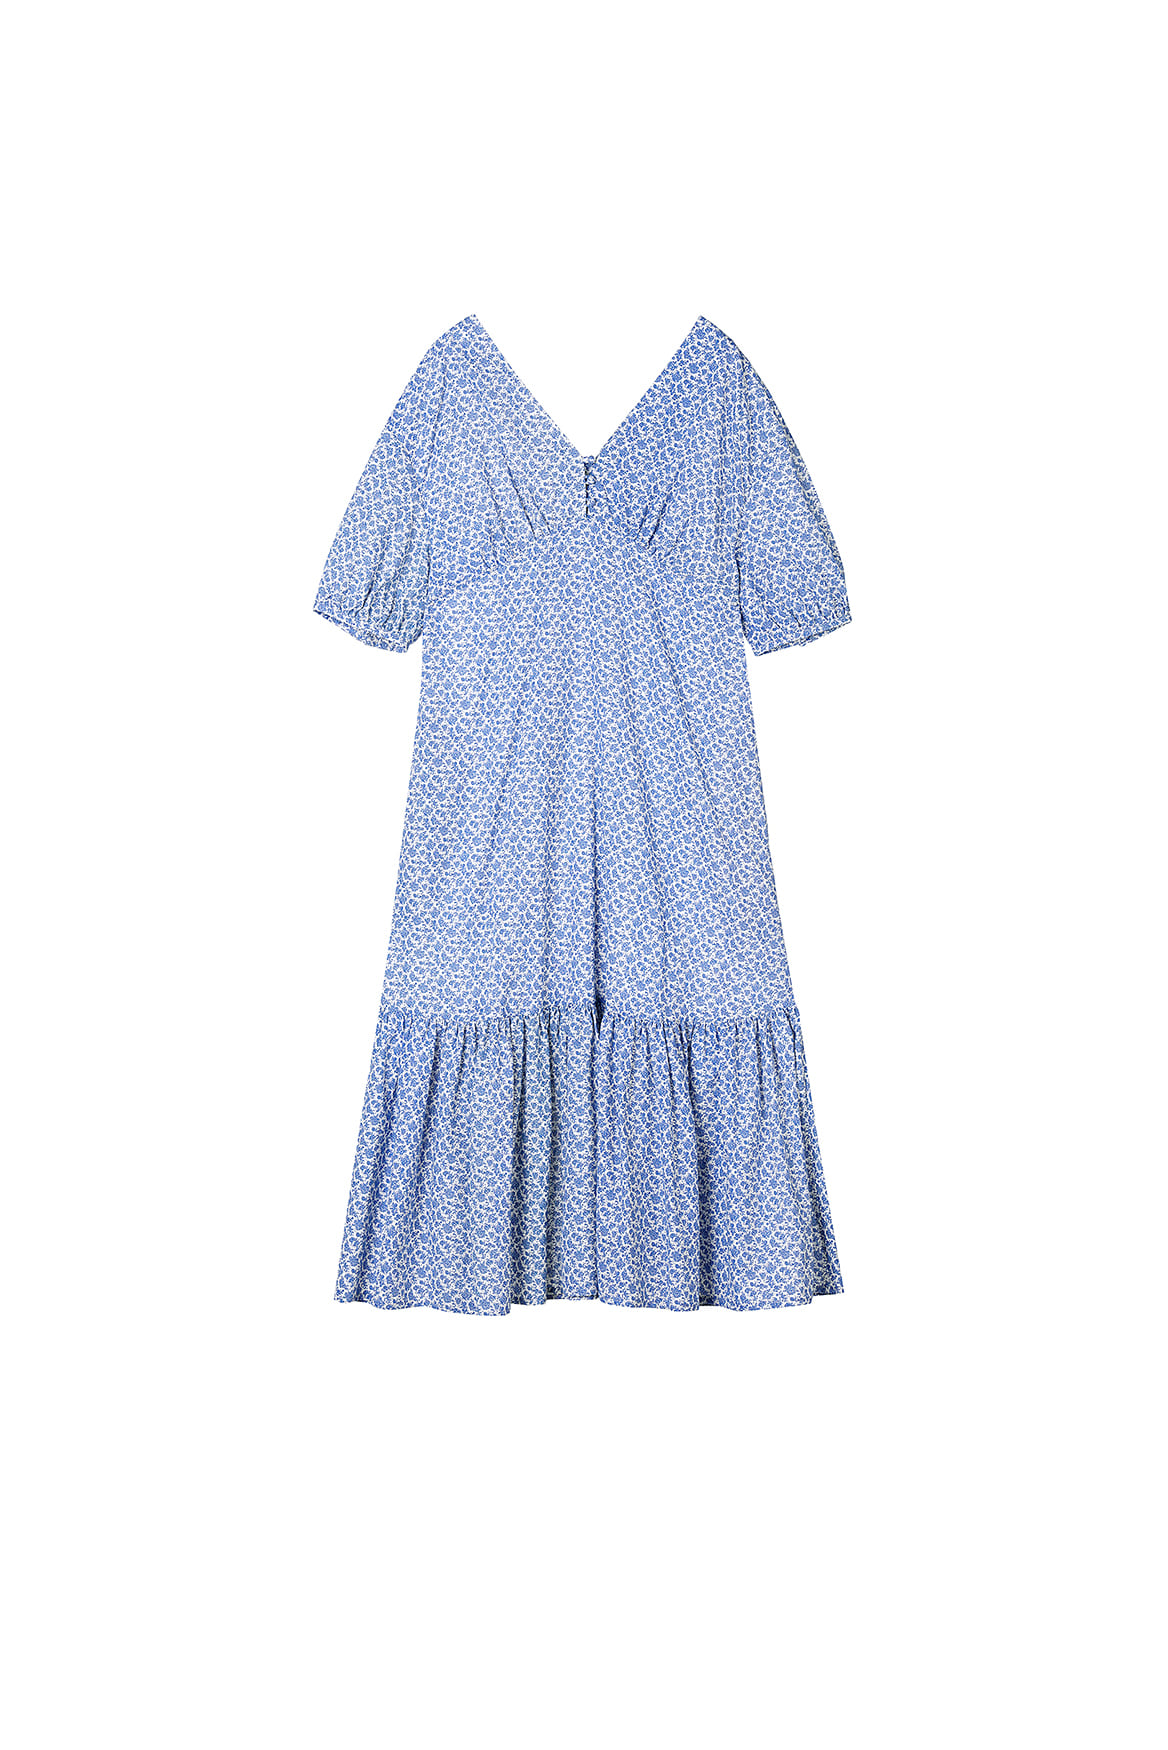 [리퍼브] Libre Floral Dress_Blue